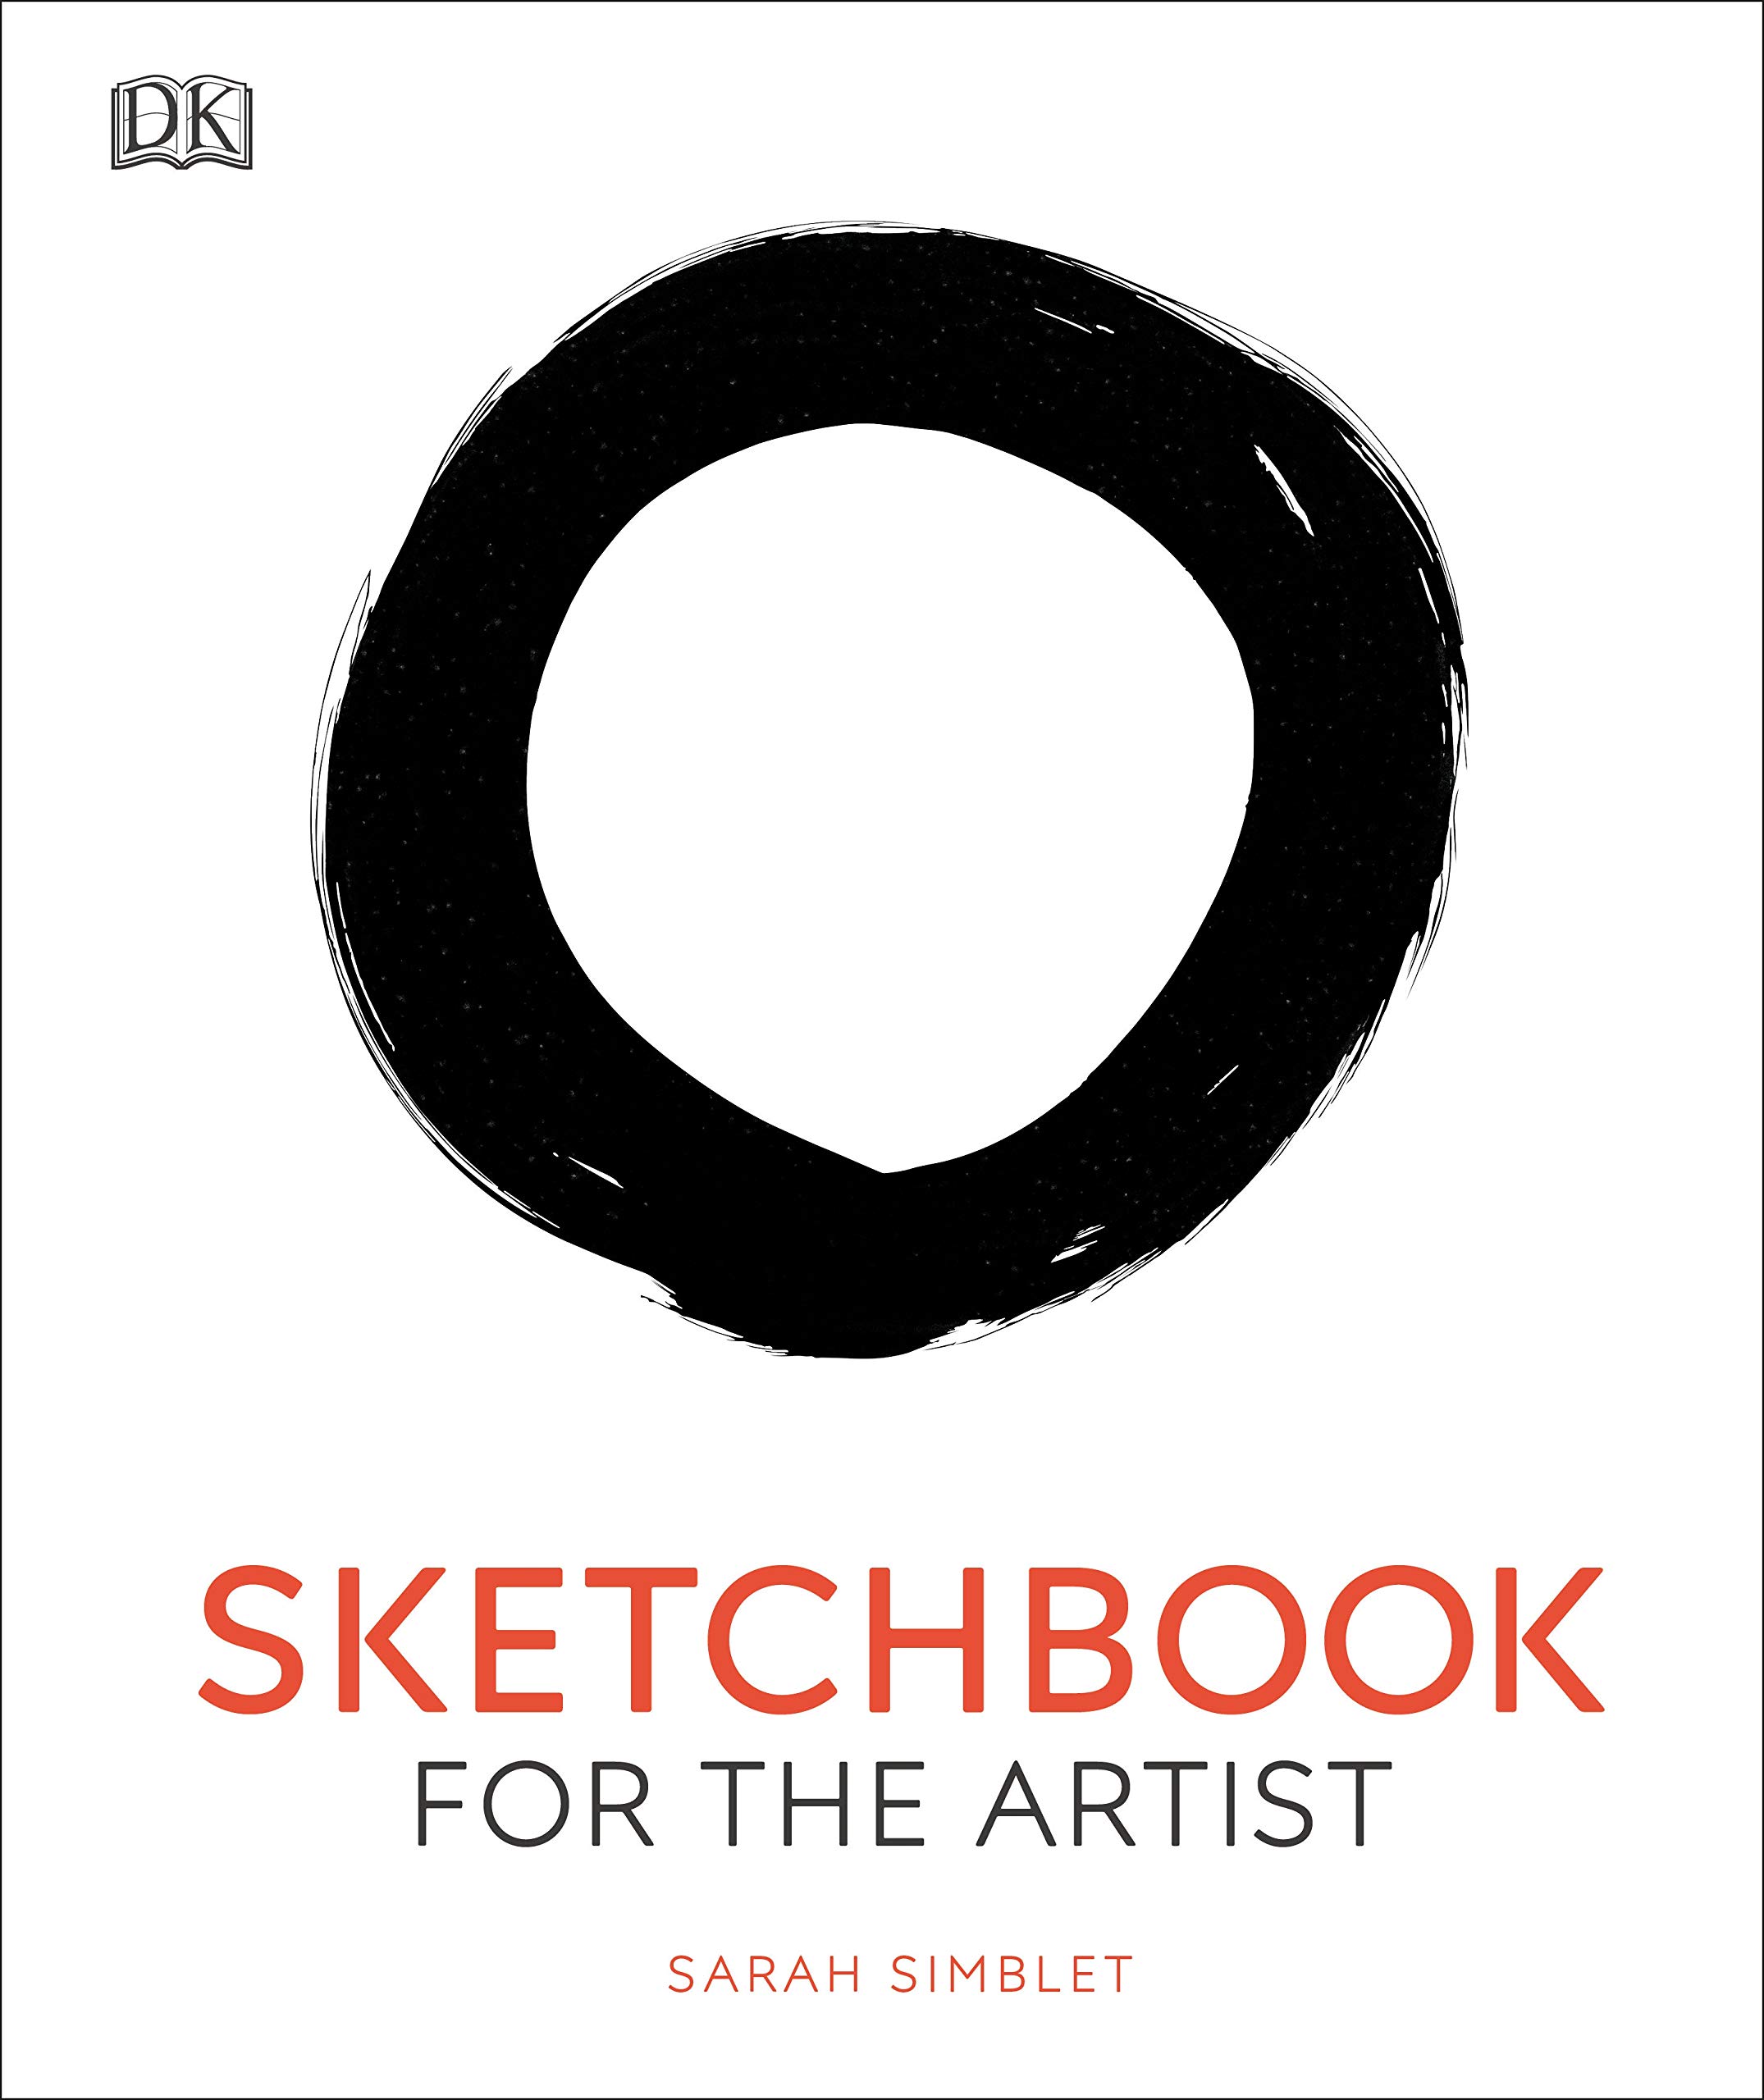 Image for "Sketchbook for the Artist"